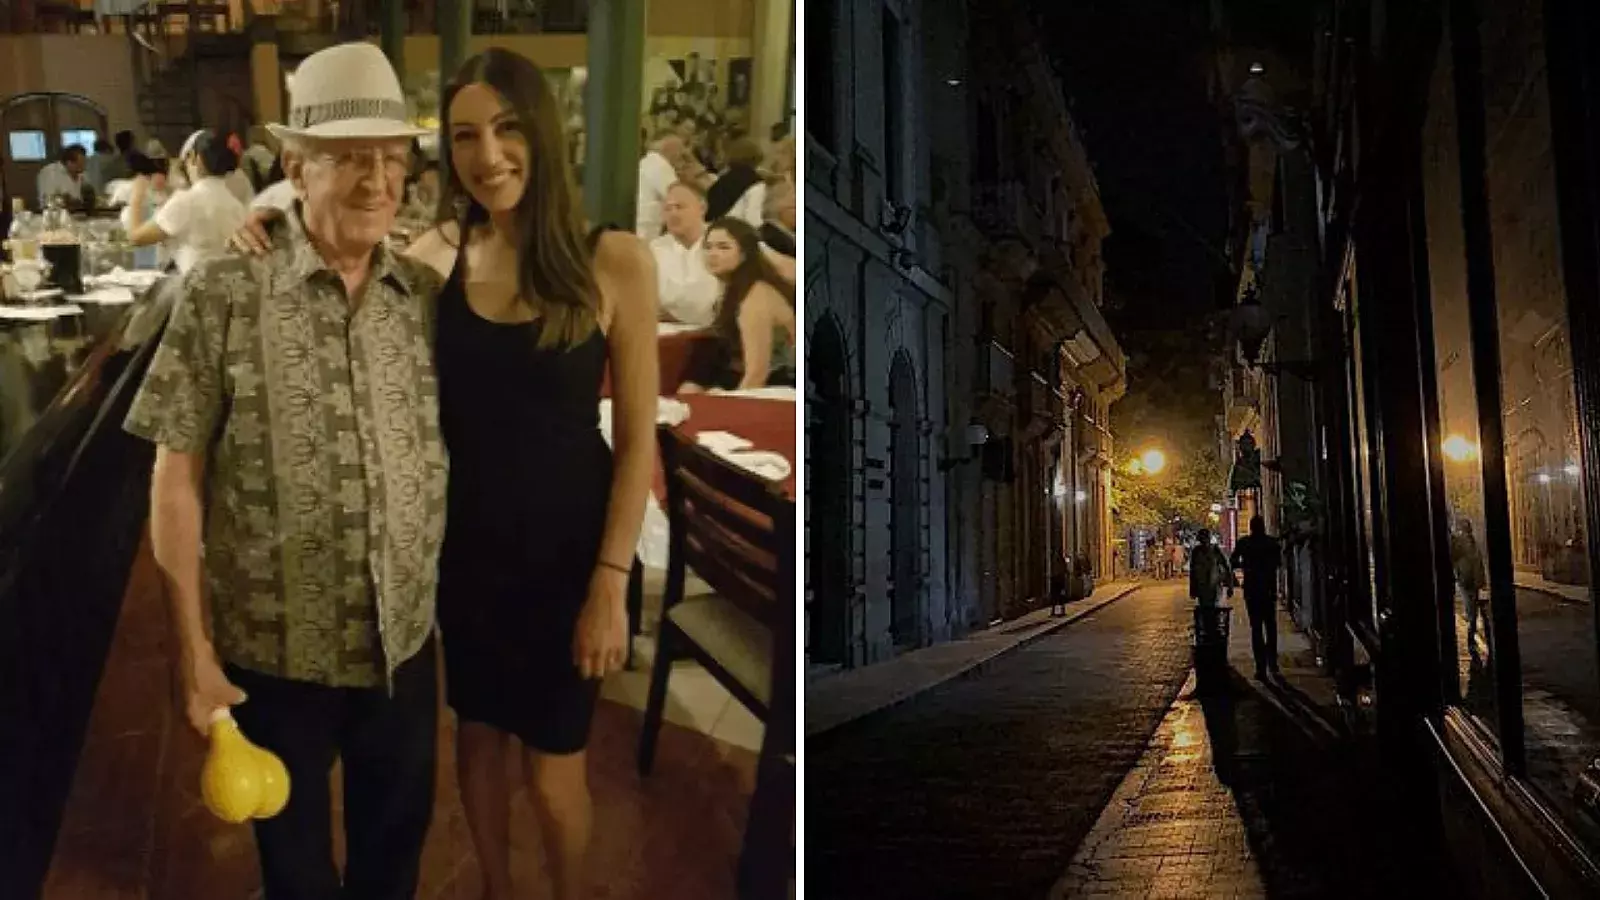 Turista australiana cuenta calvario en La Habana